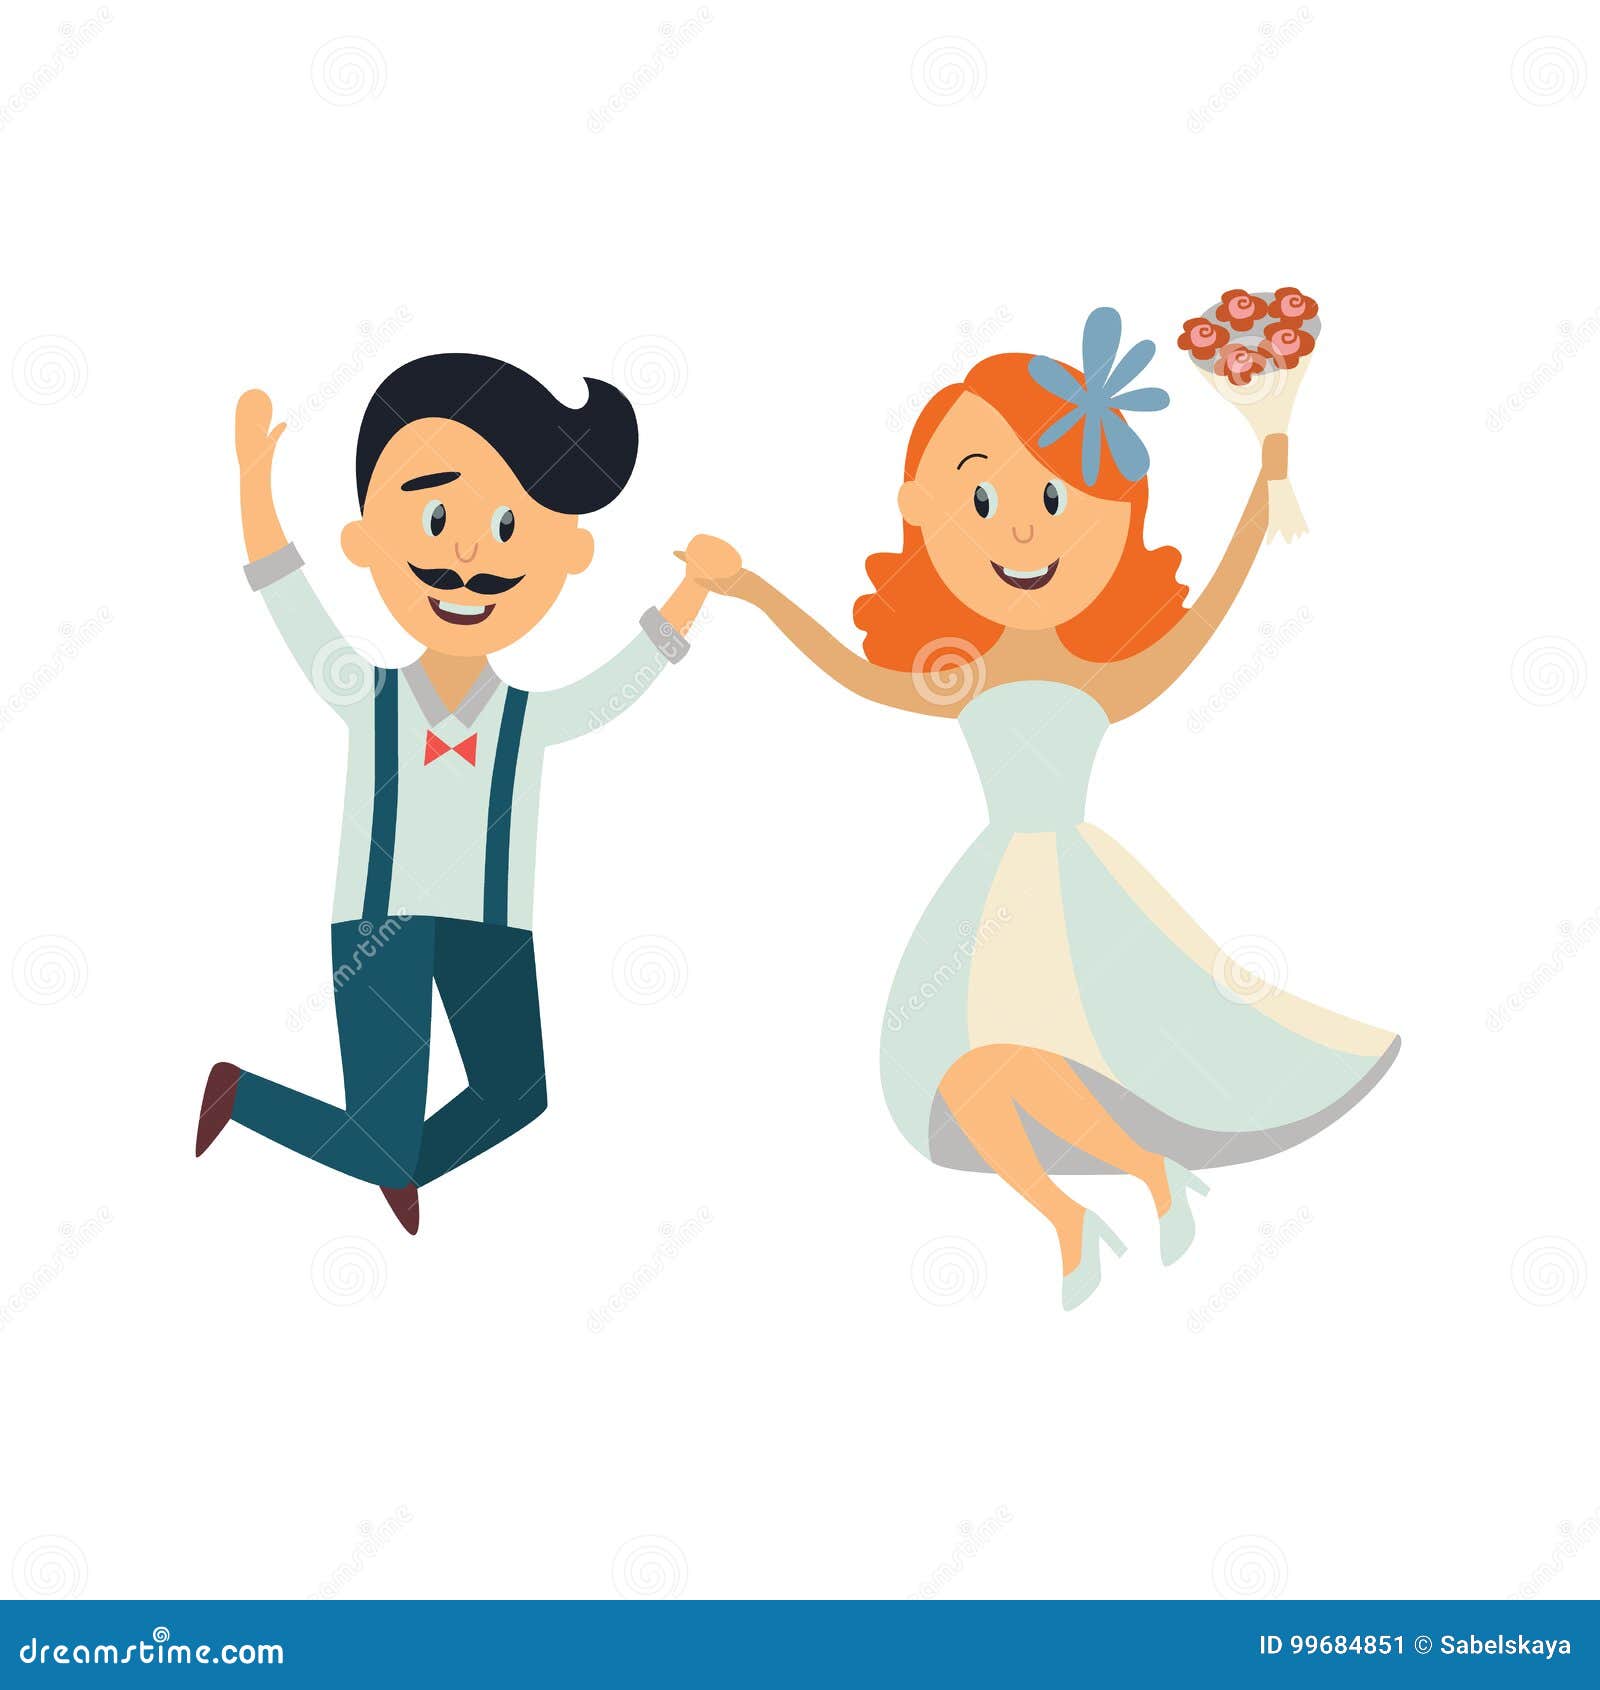 Флат свадебный бал. Иллюстрация танец жениха с невестой. Жених и невеста танцуют нарисованные. Жених картинки Рисованные. Жених невеста танцуют три круга.